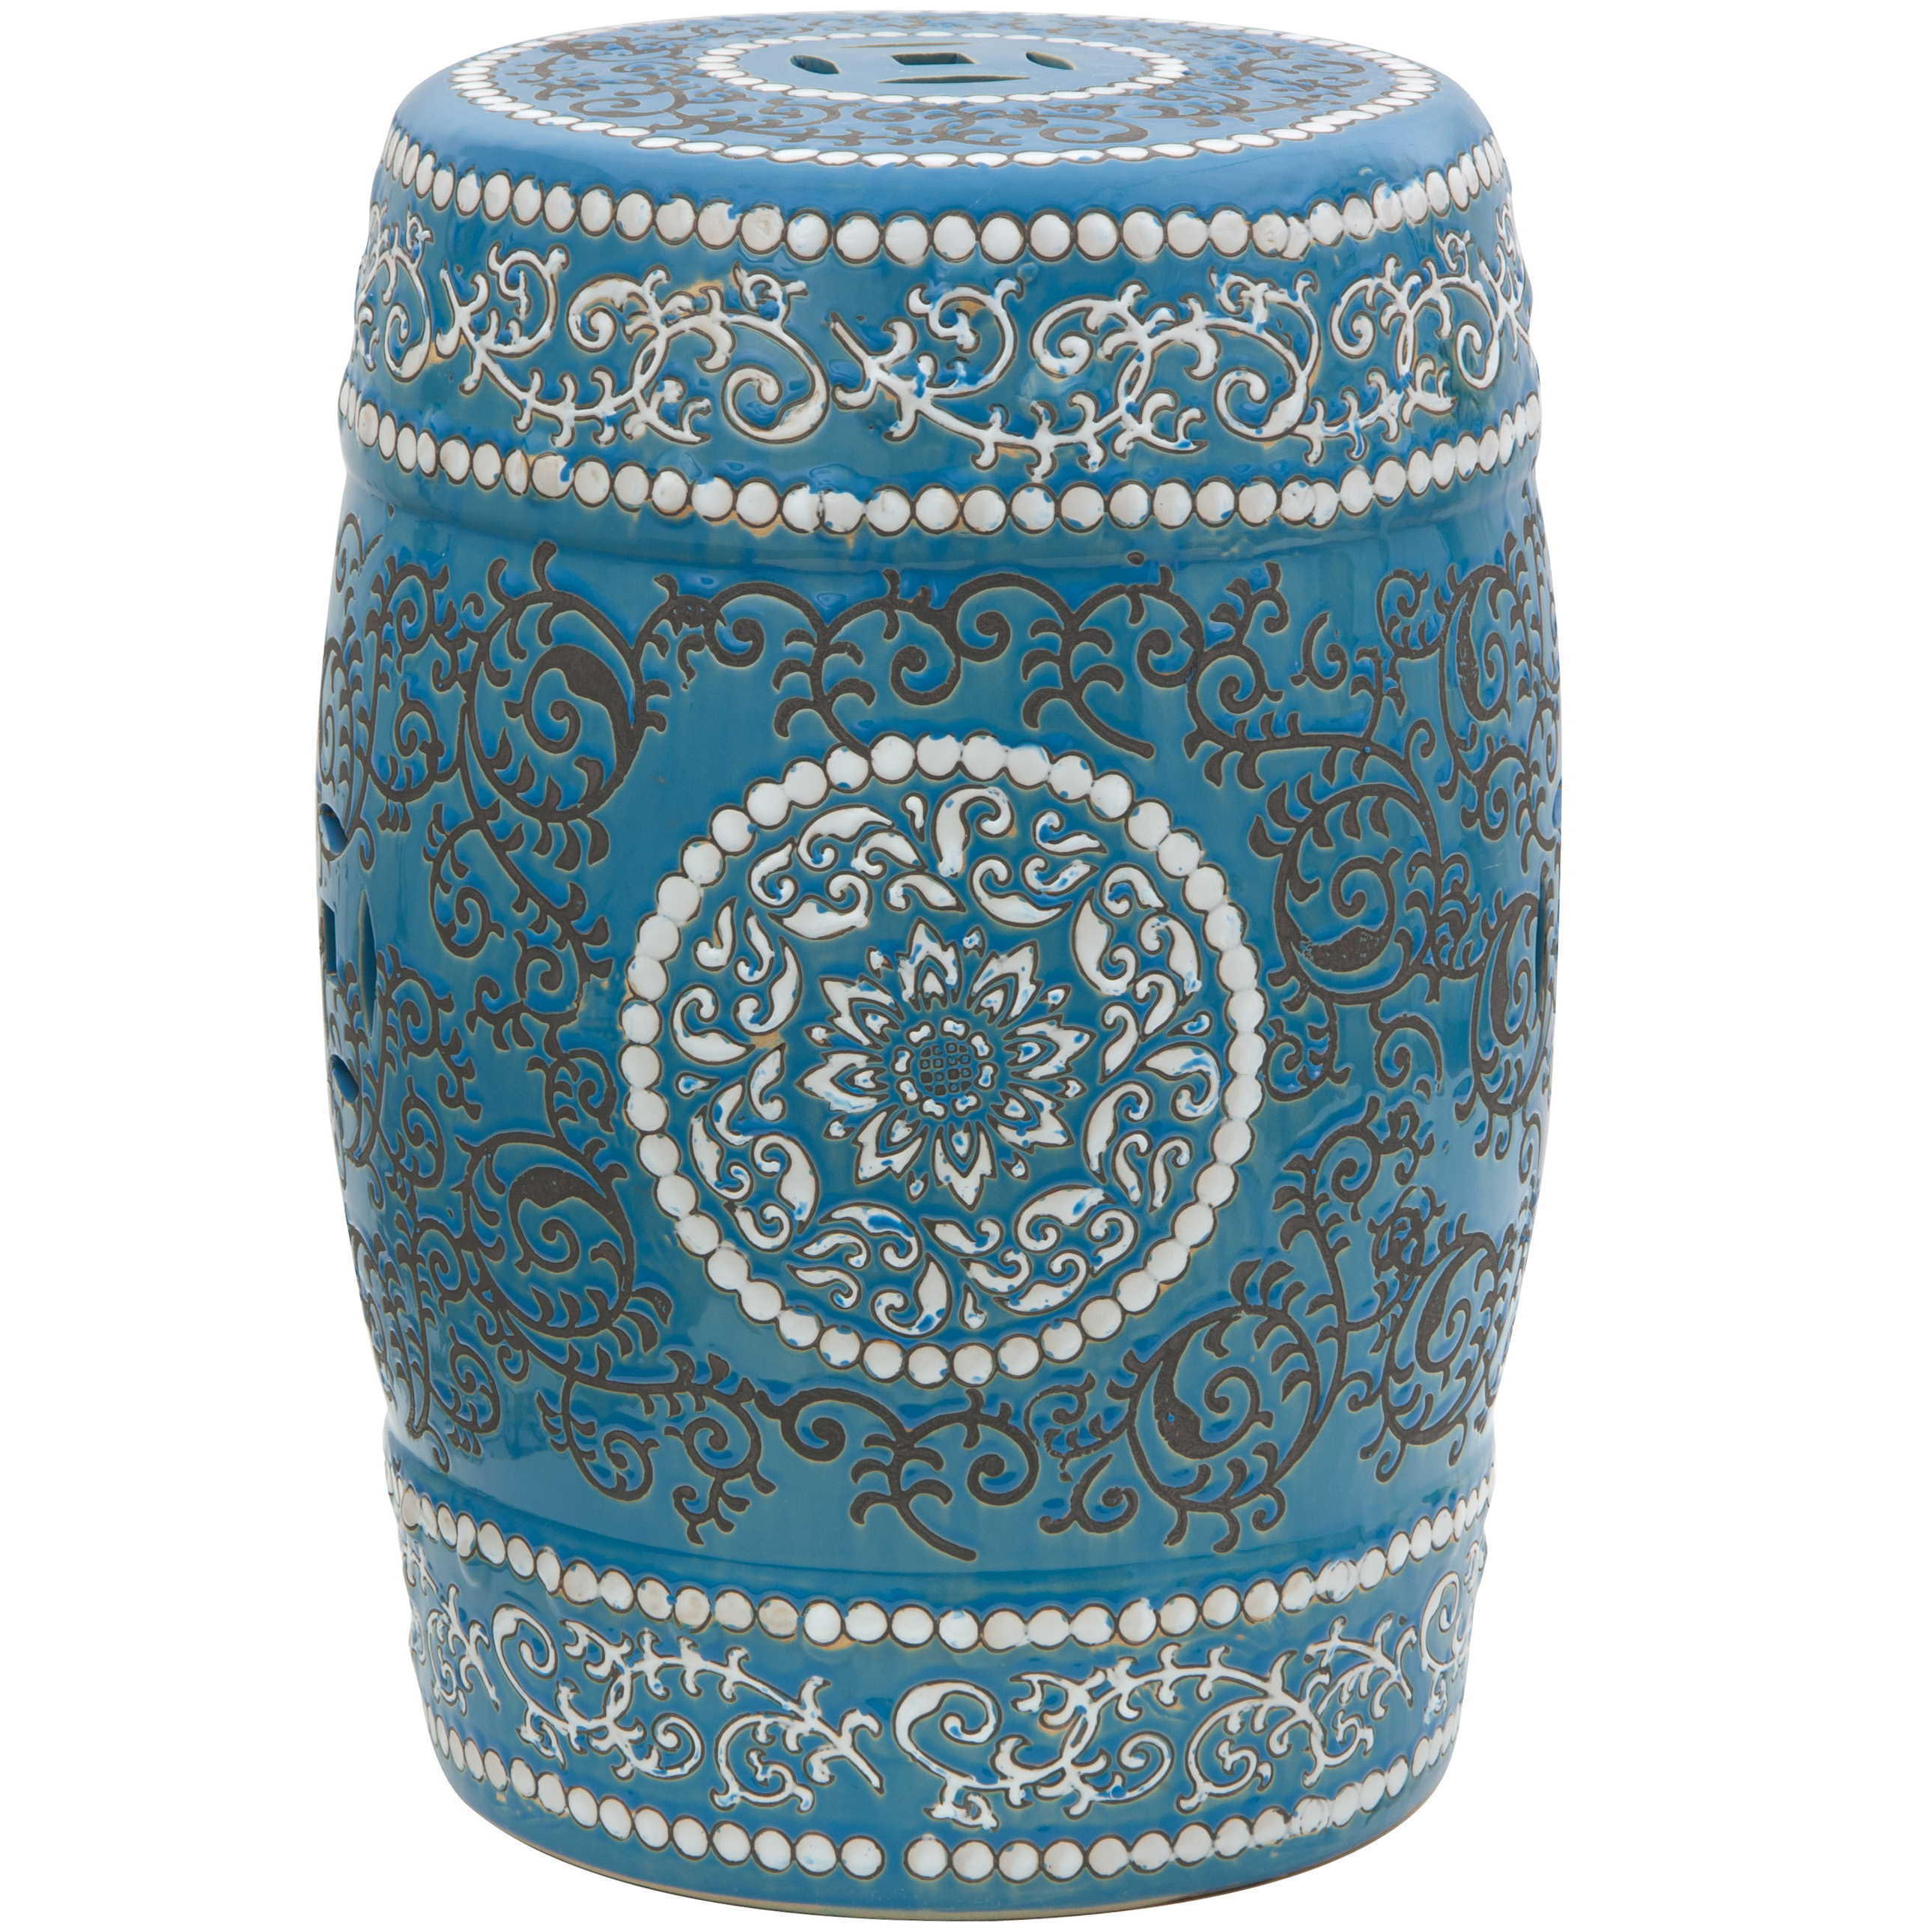 Oriental Furniture 18" Blue Medallion Porcelain Garden Stool - image 1 of 2